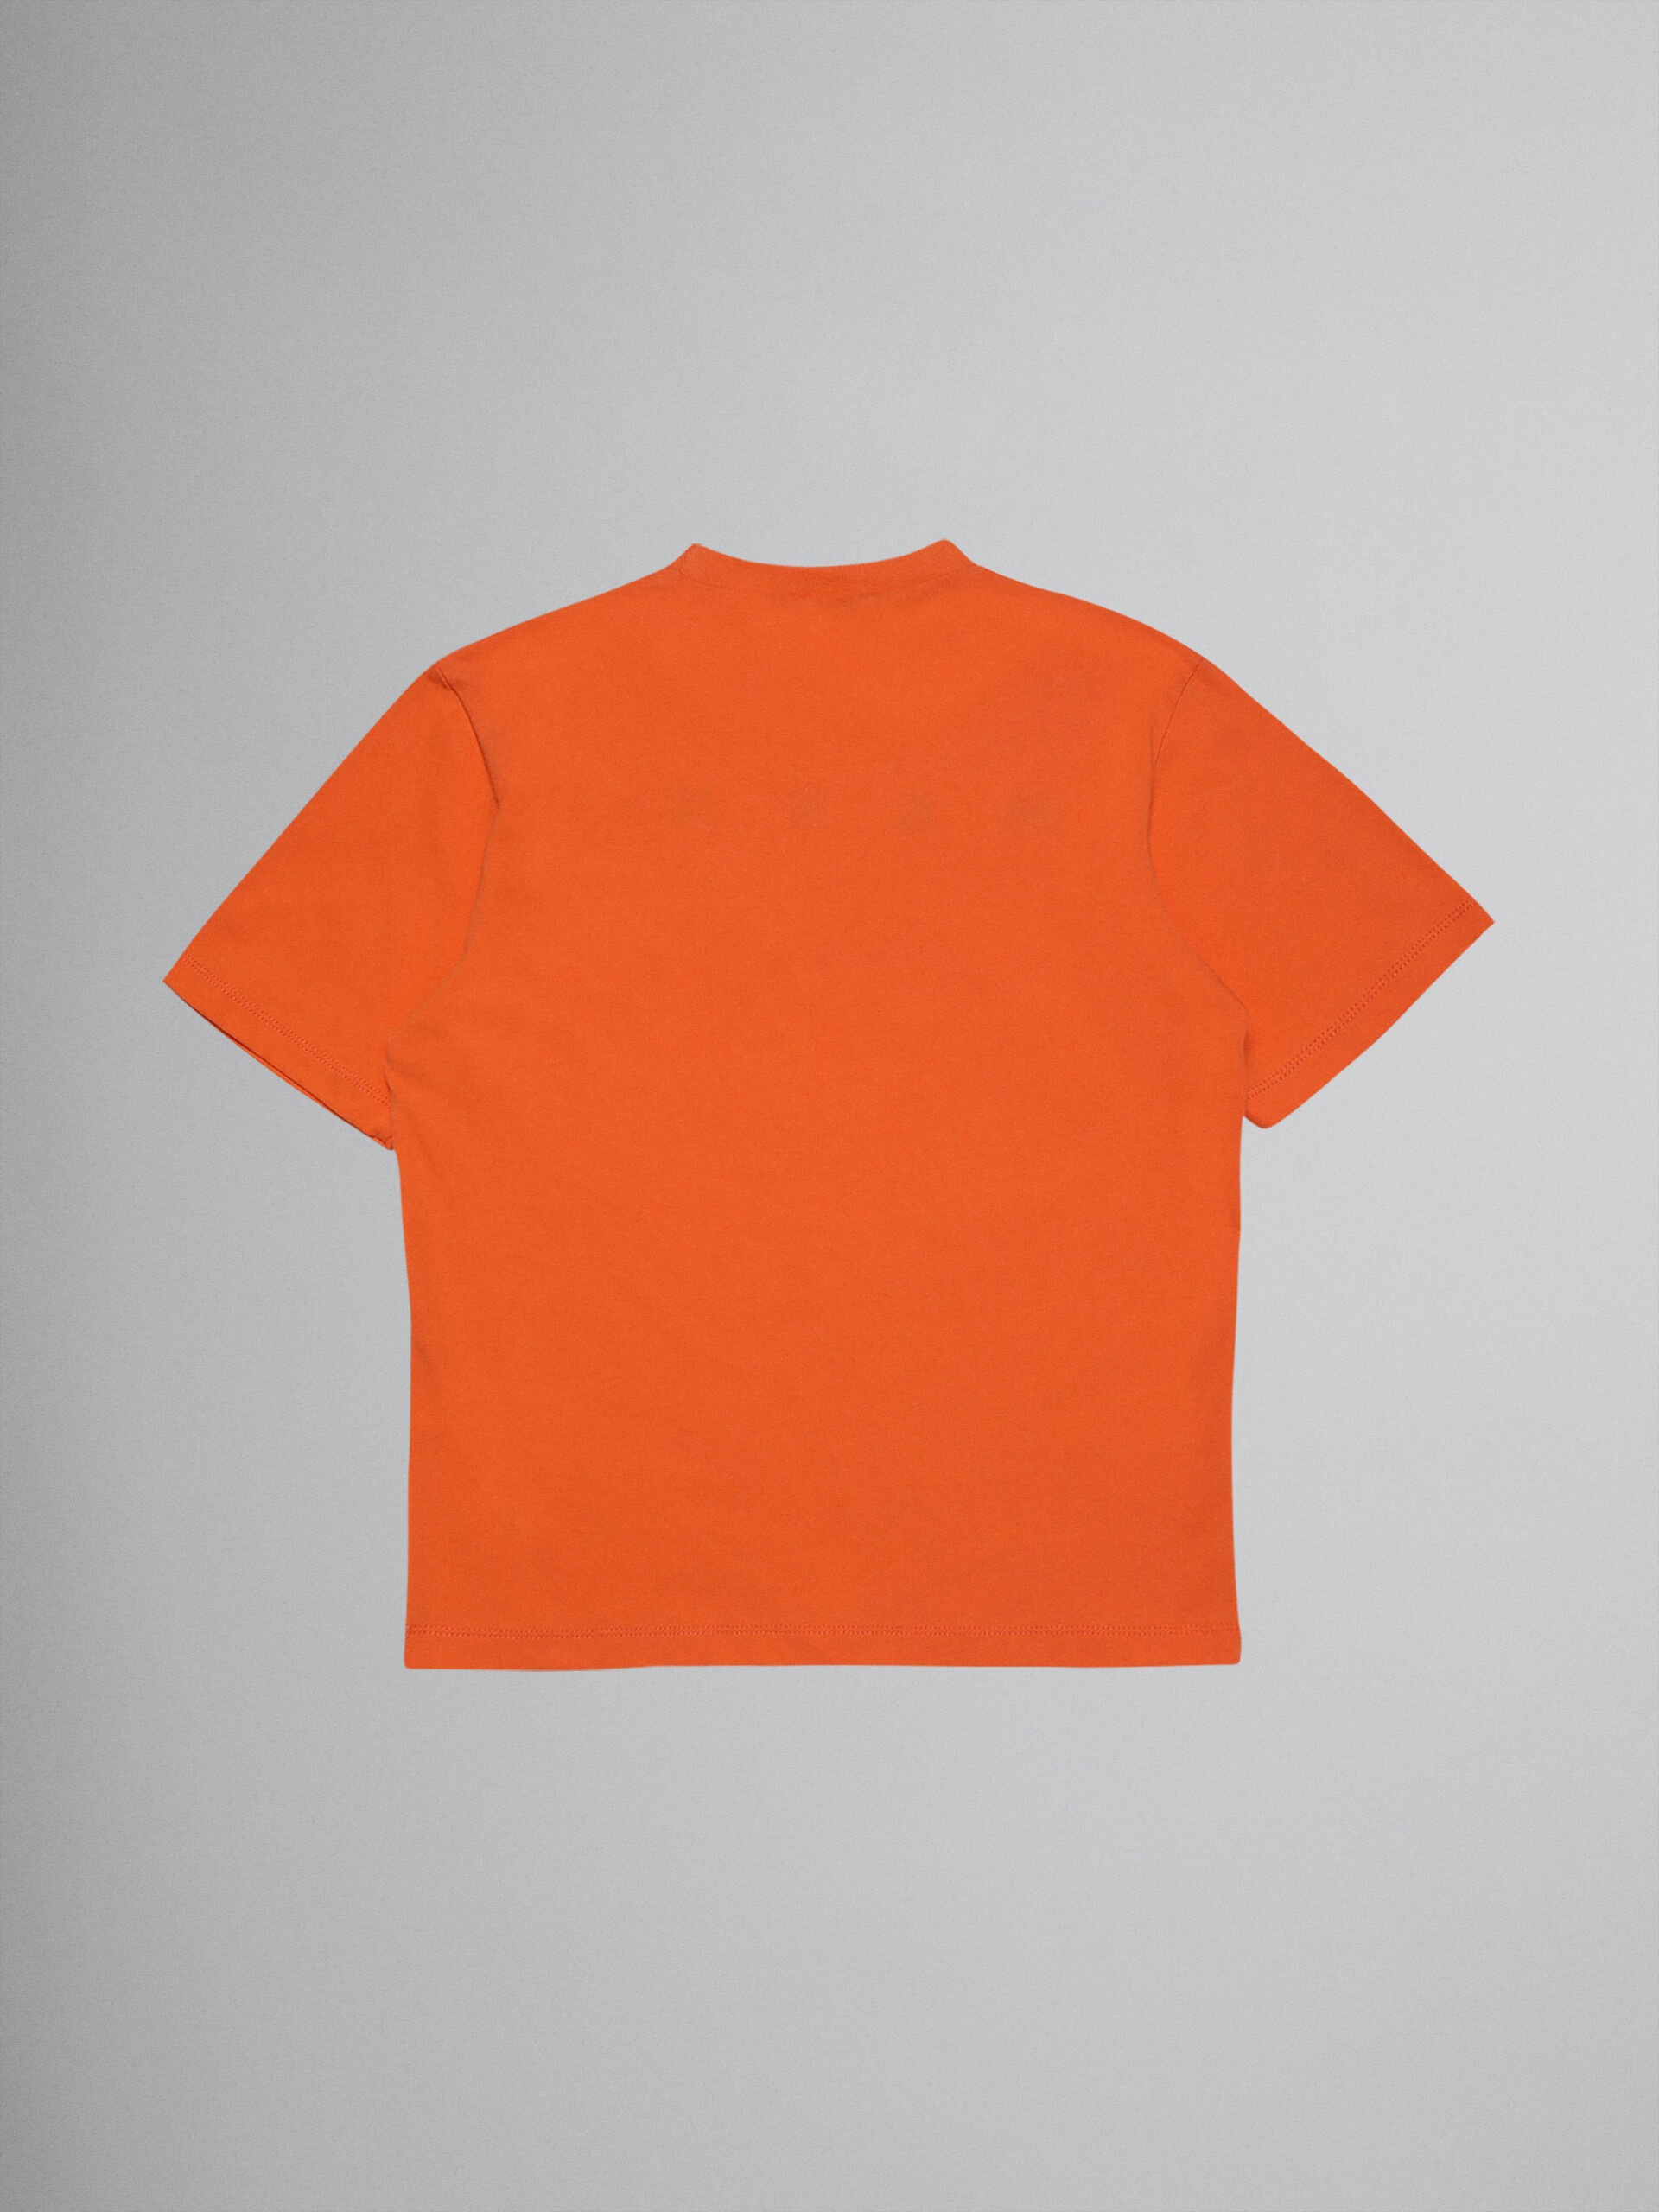 Camiseta de jersey de algodón naranja con logotipo - Camisetas - Image 2